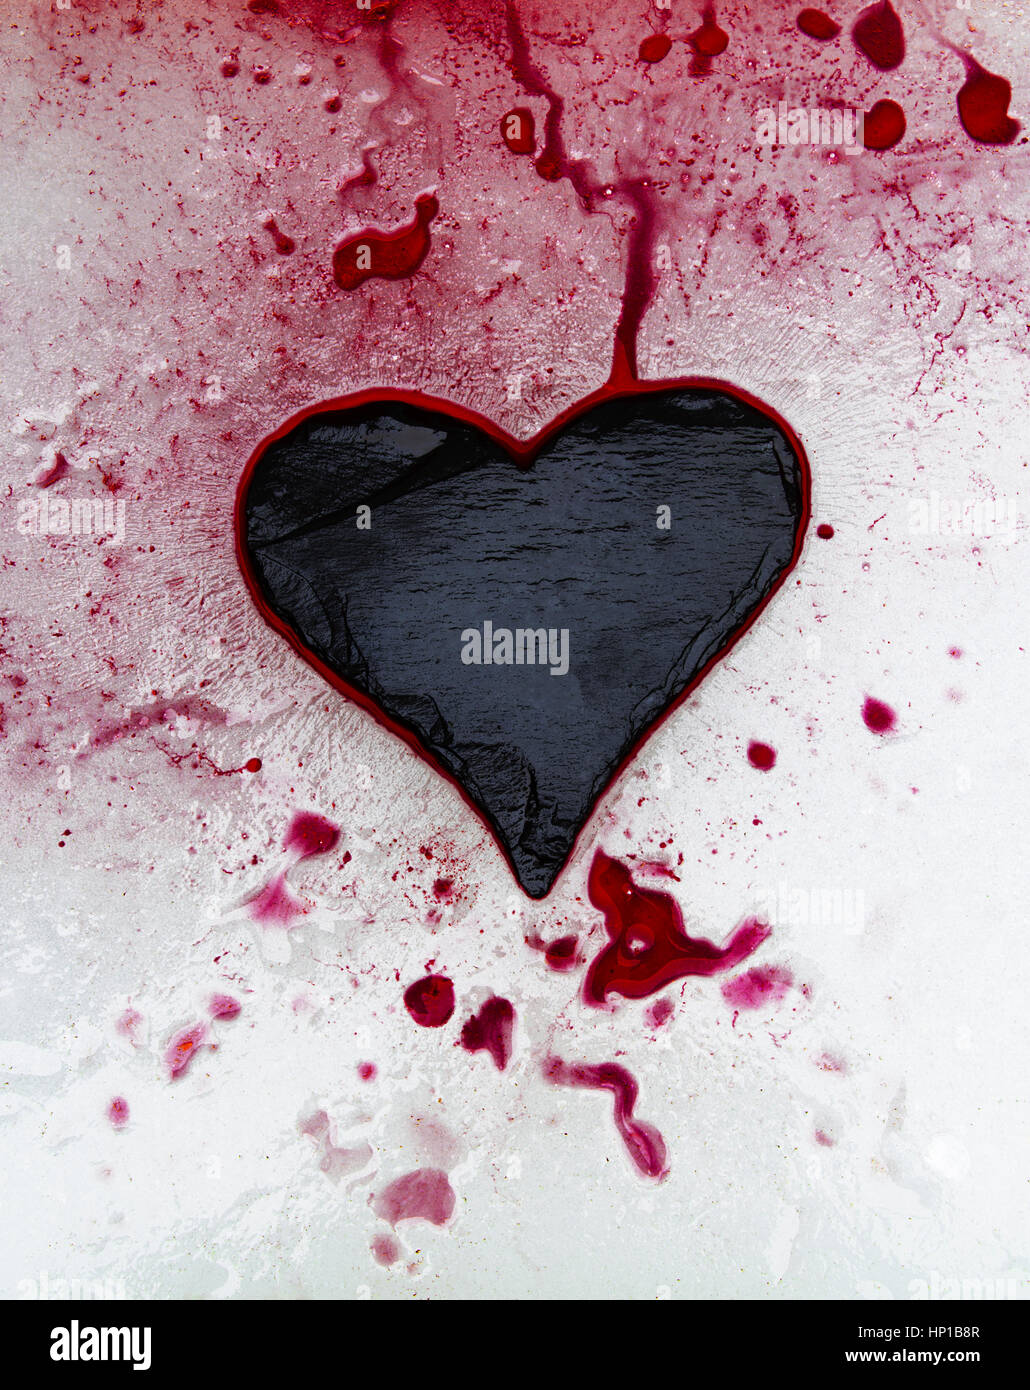 Pizarra y corazón de tinta roja sobre el hielo Foto de stock